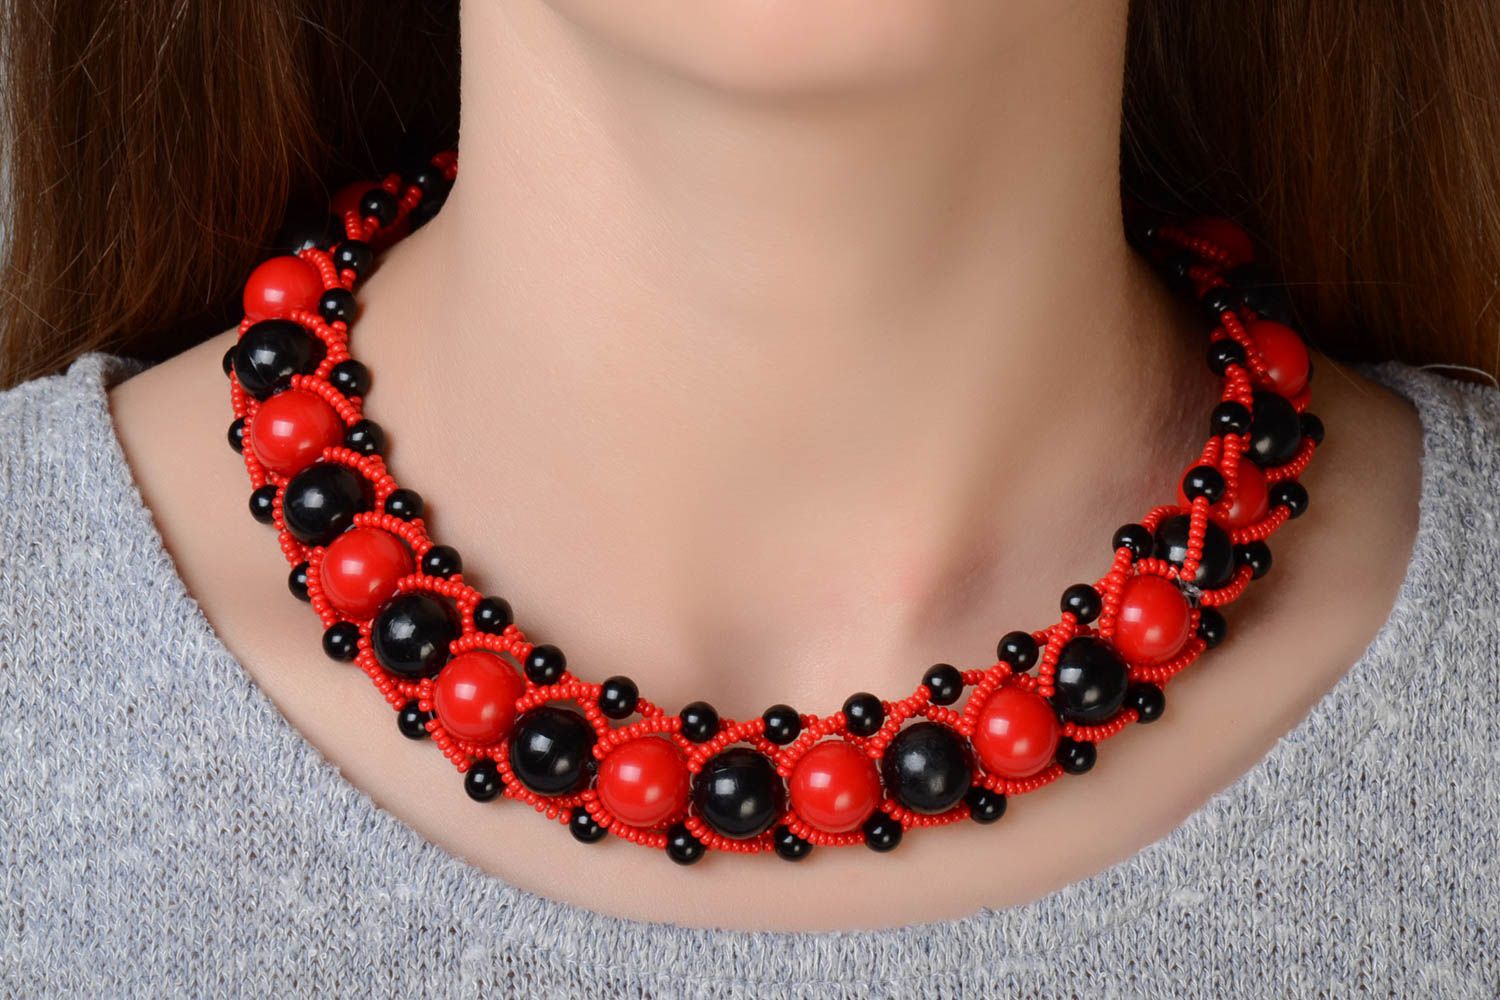 Ожерелье из бусин и бисера красное с черным крупное стильное модное хэнд мейд фото 1